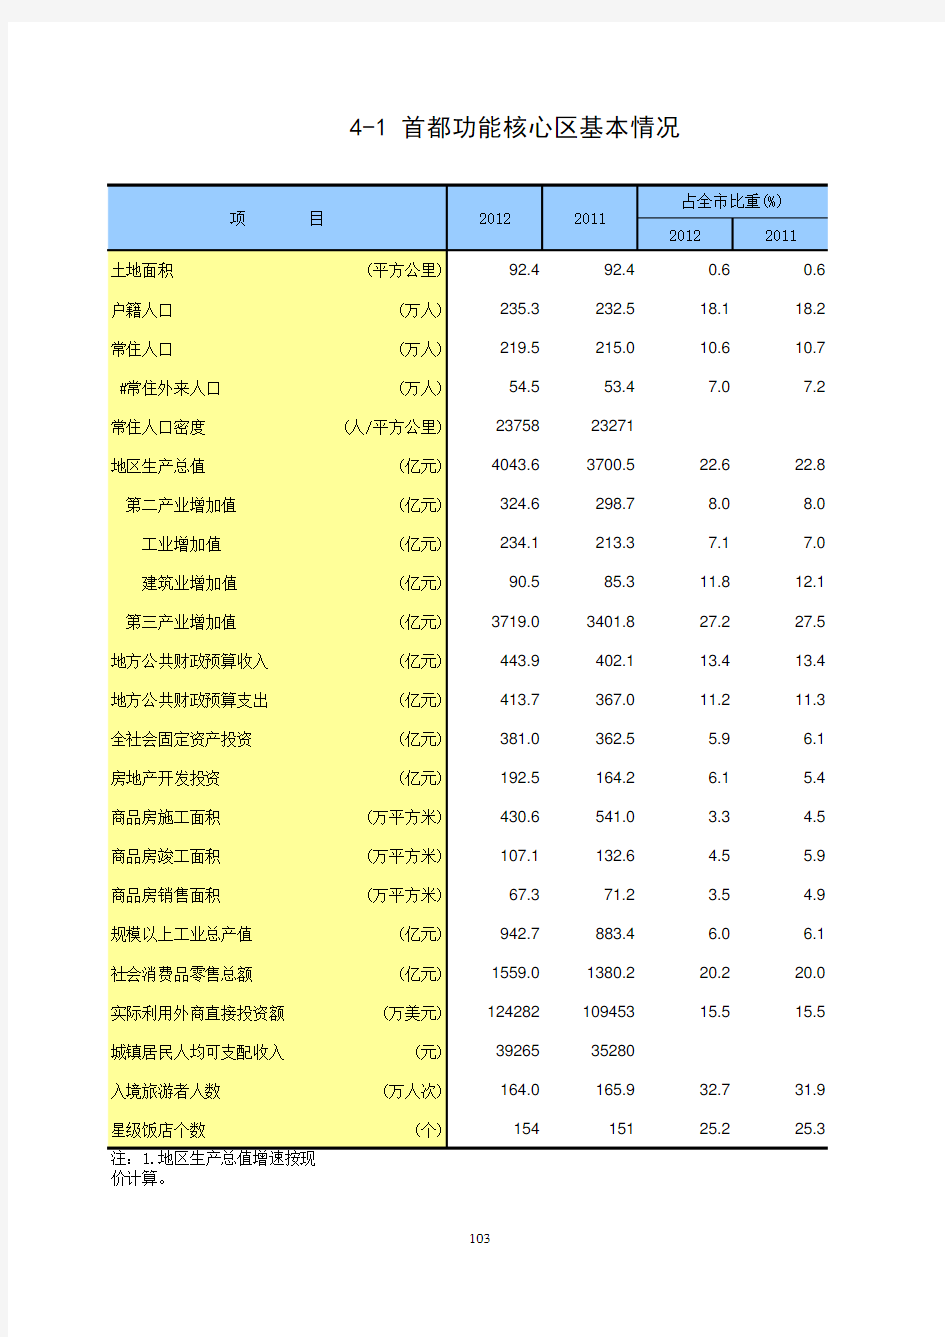 北京统计数据2013：四大功能区_4-1首都功能核心区基本情况(2011-2012)